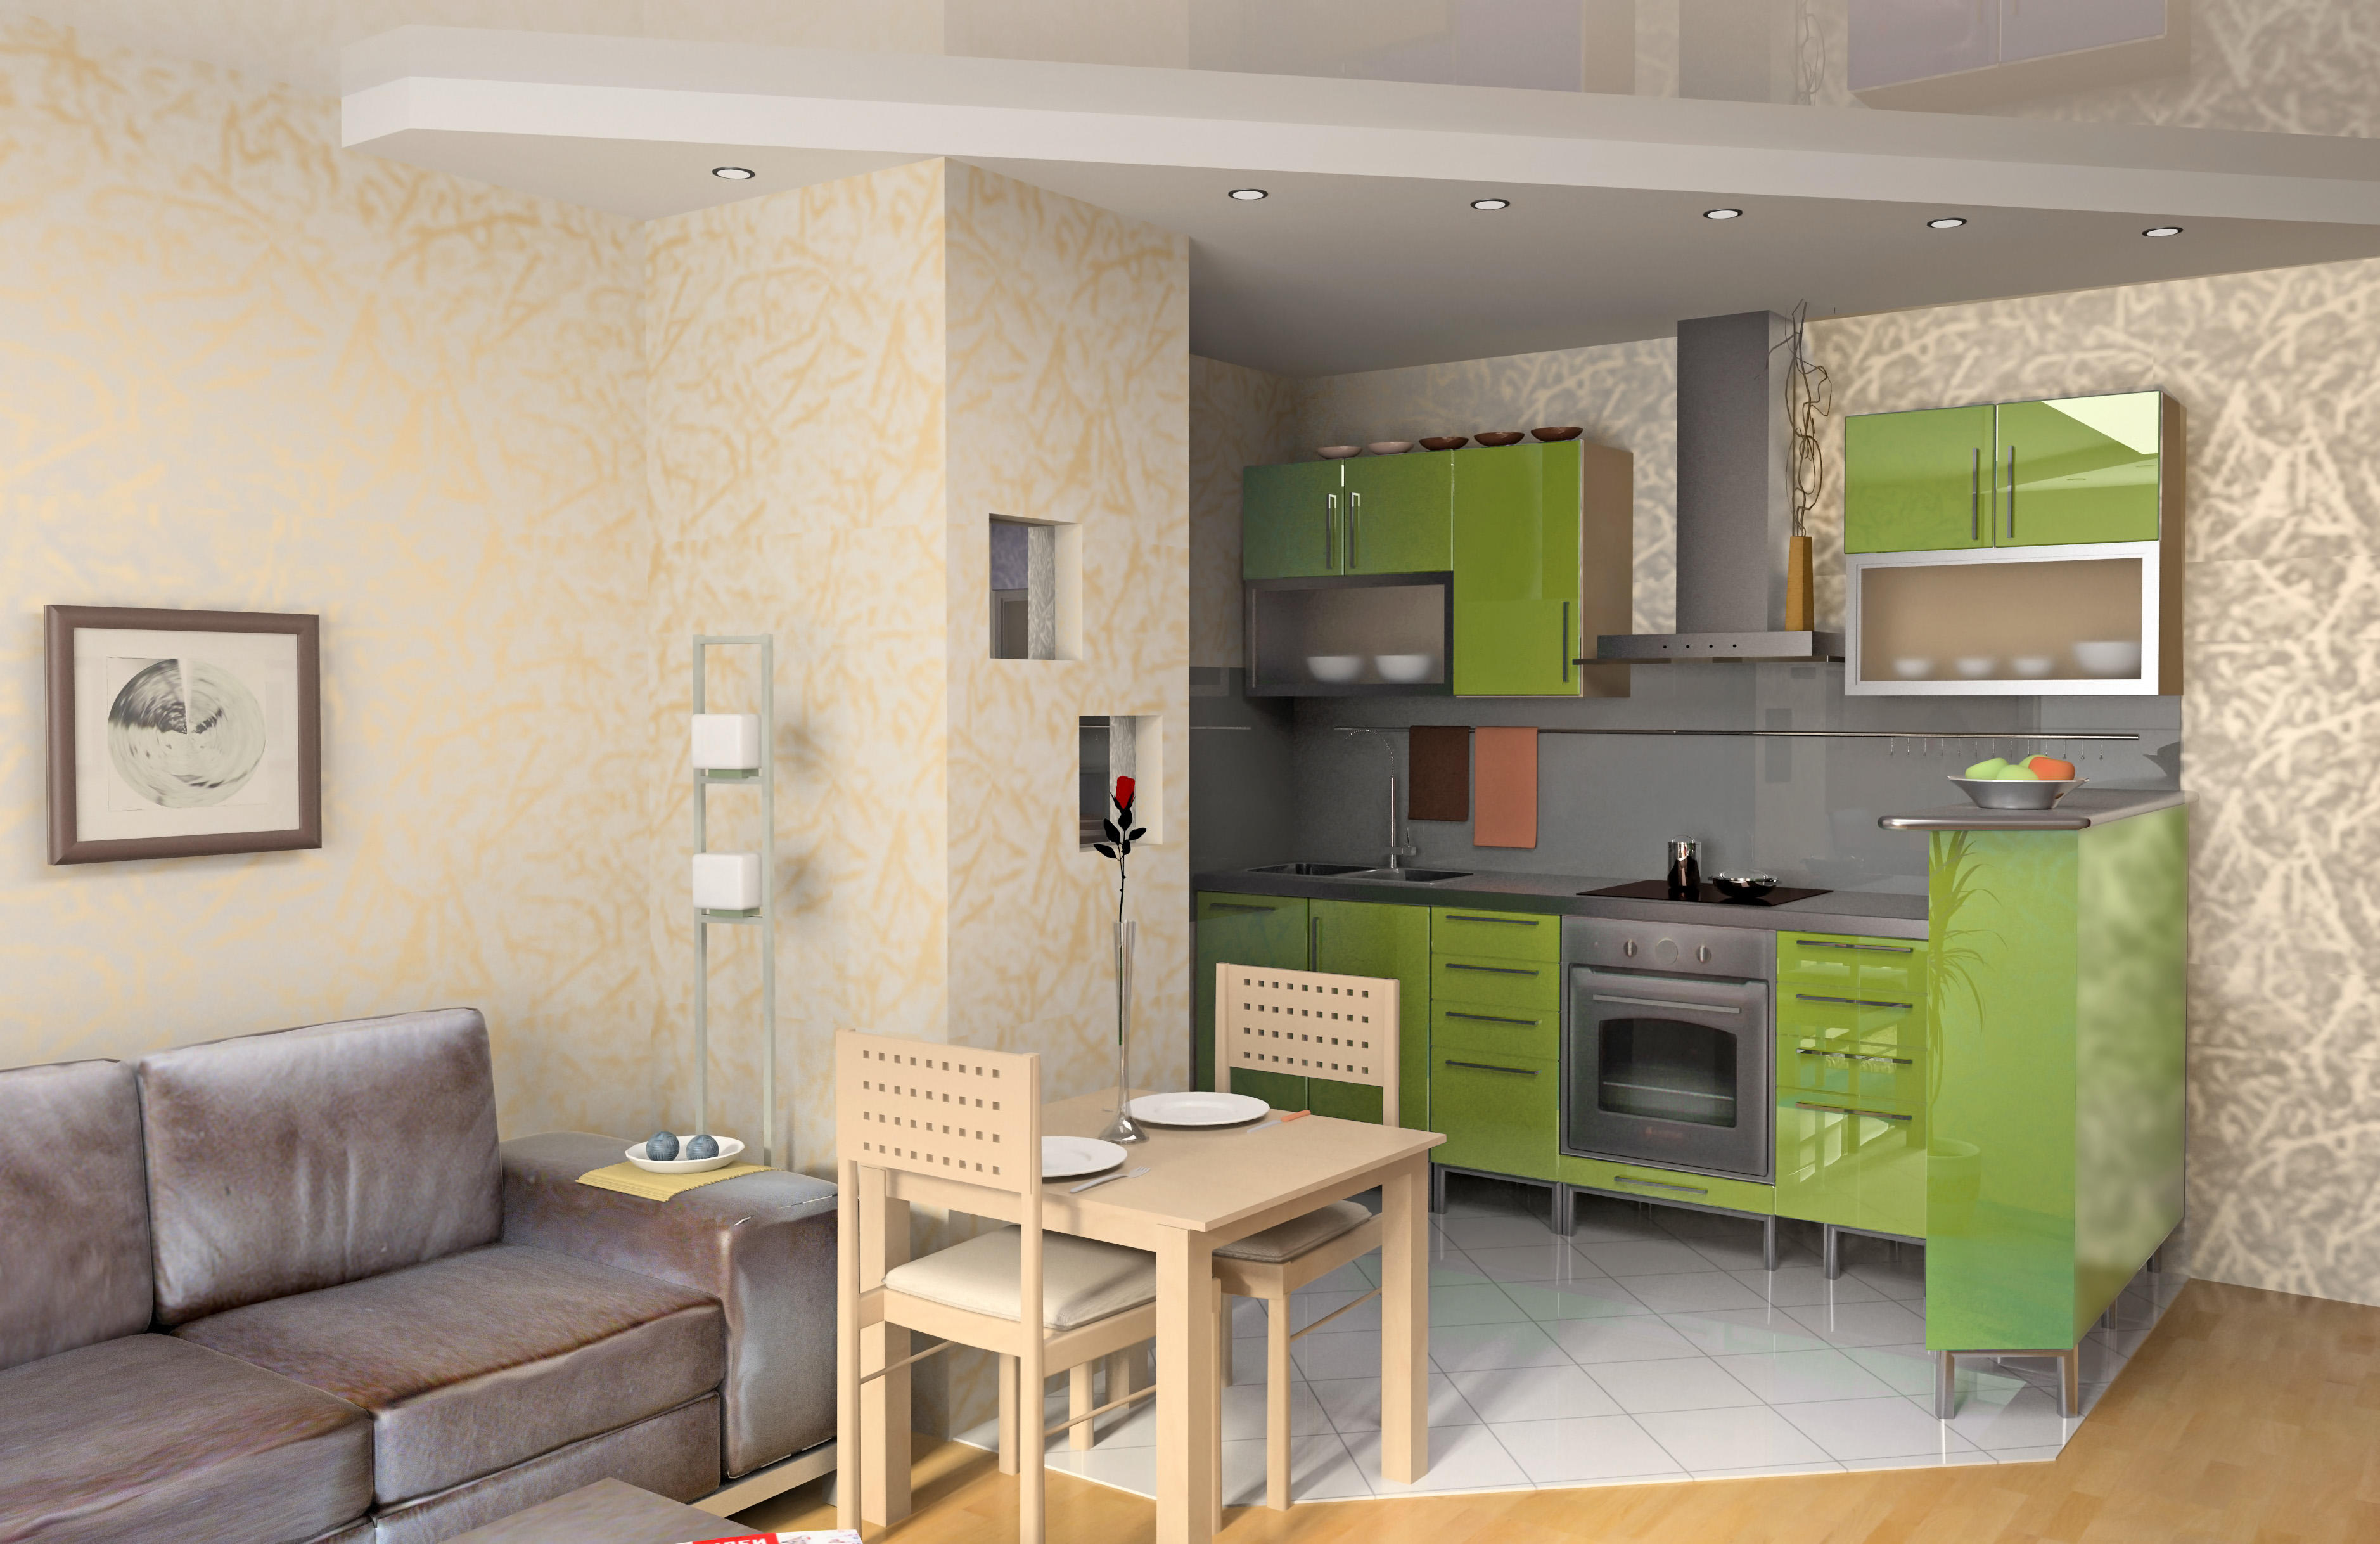 Дизайн гостиной с кухней в квартире 18 кв м